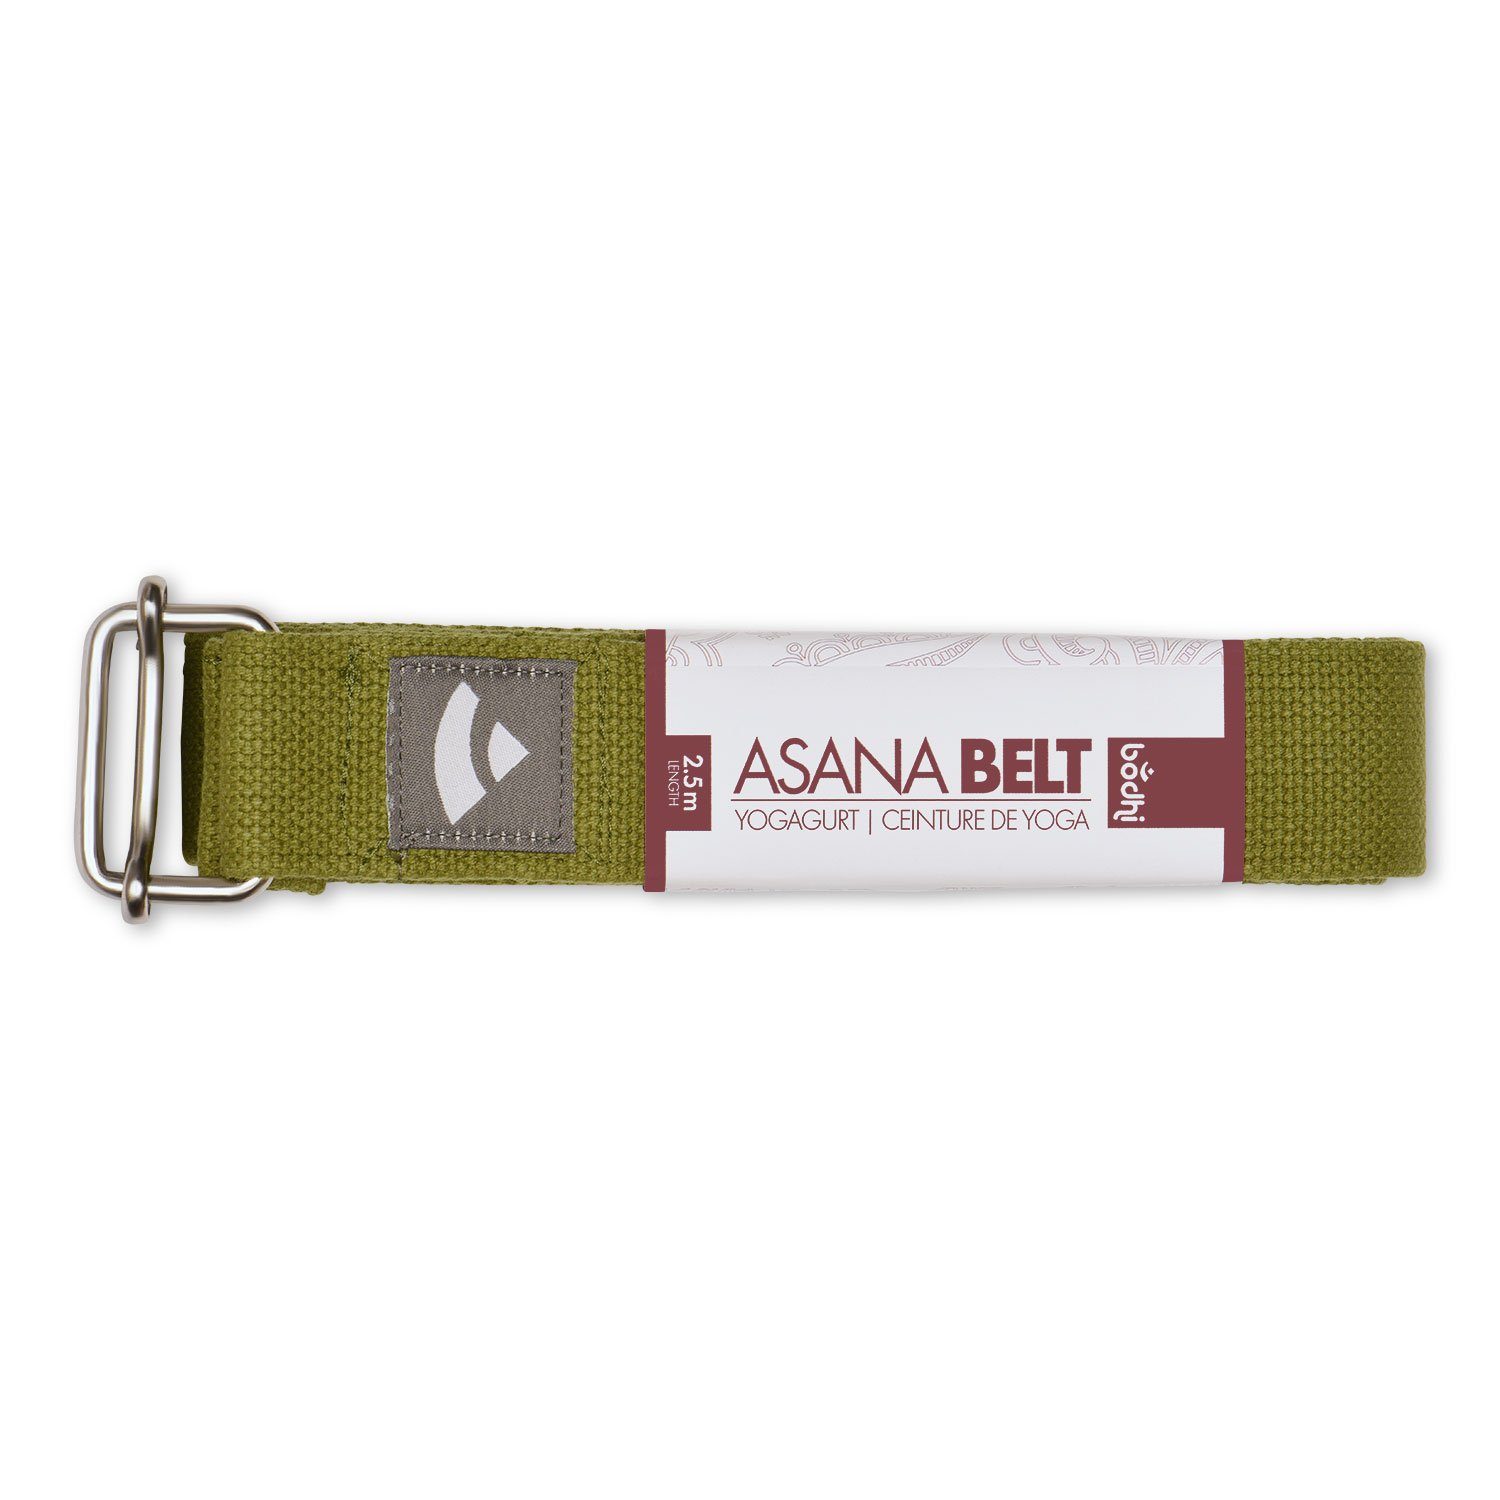 bodhi Yogamatte olivgrün ASANA 2,5m, Yogagurt Metall Schiebeschnalle BELT mit